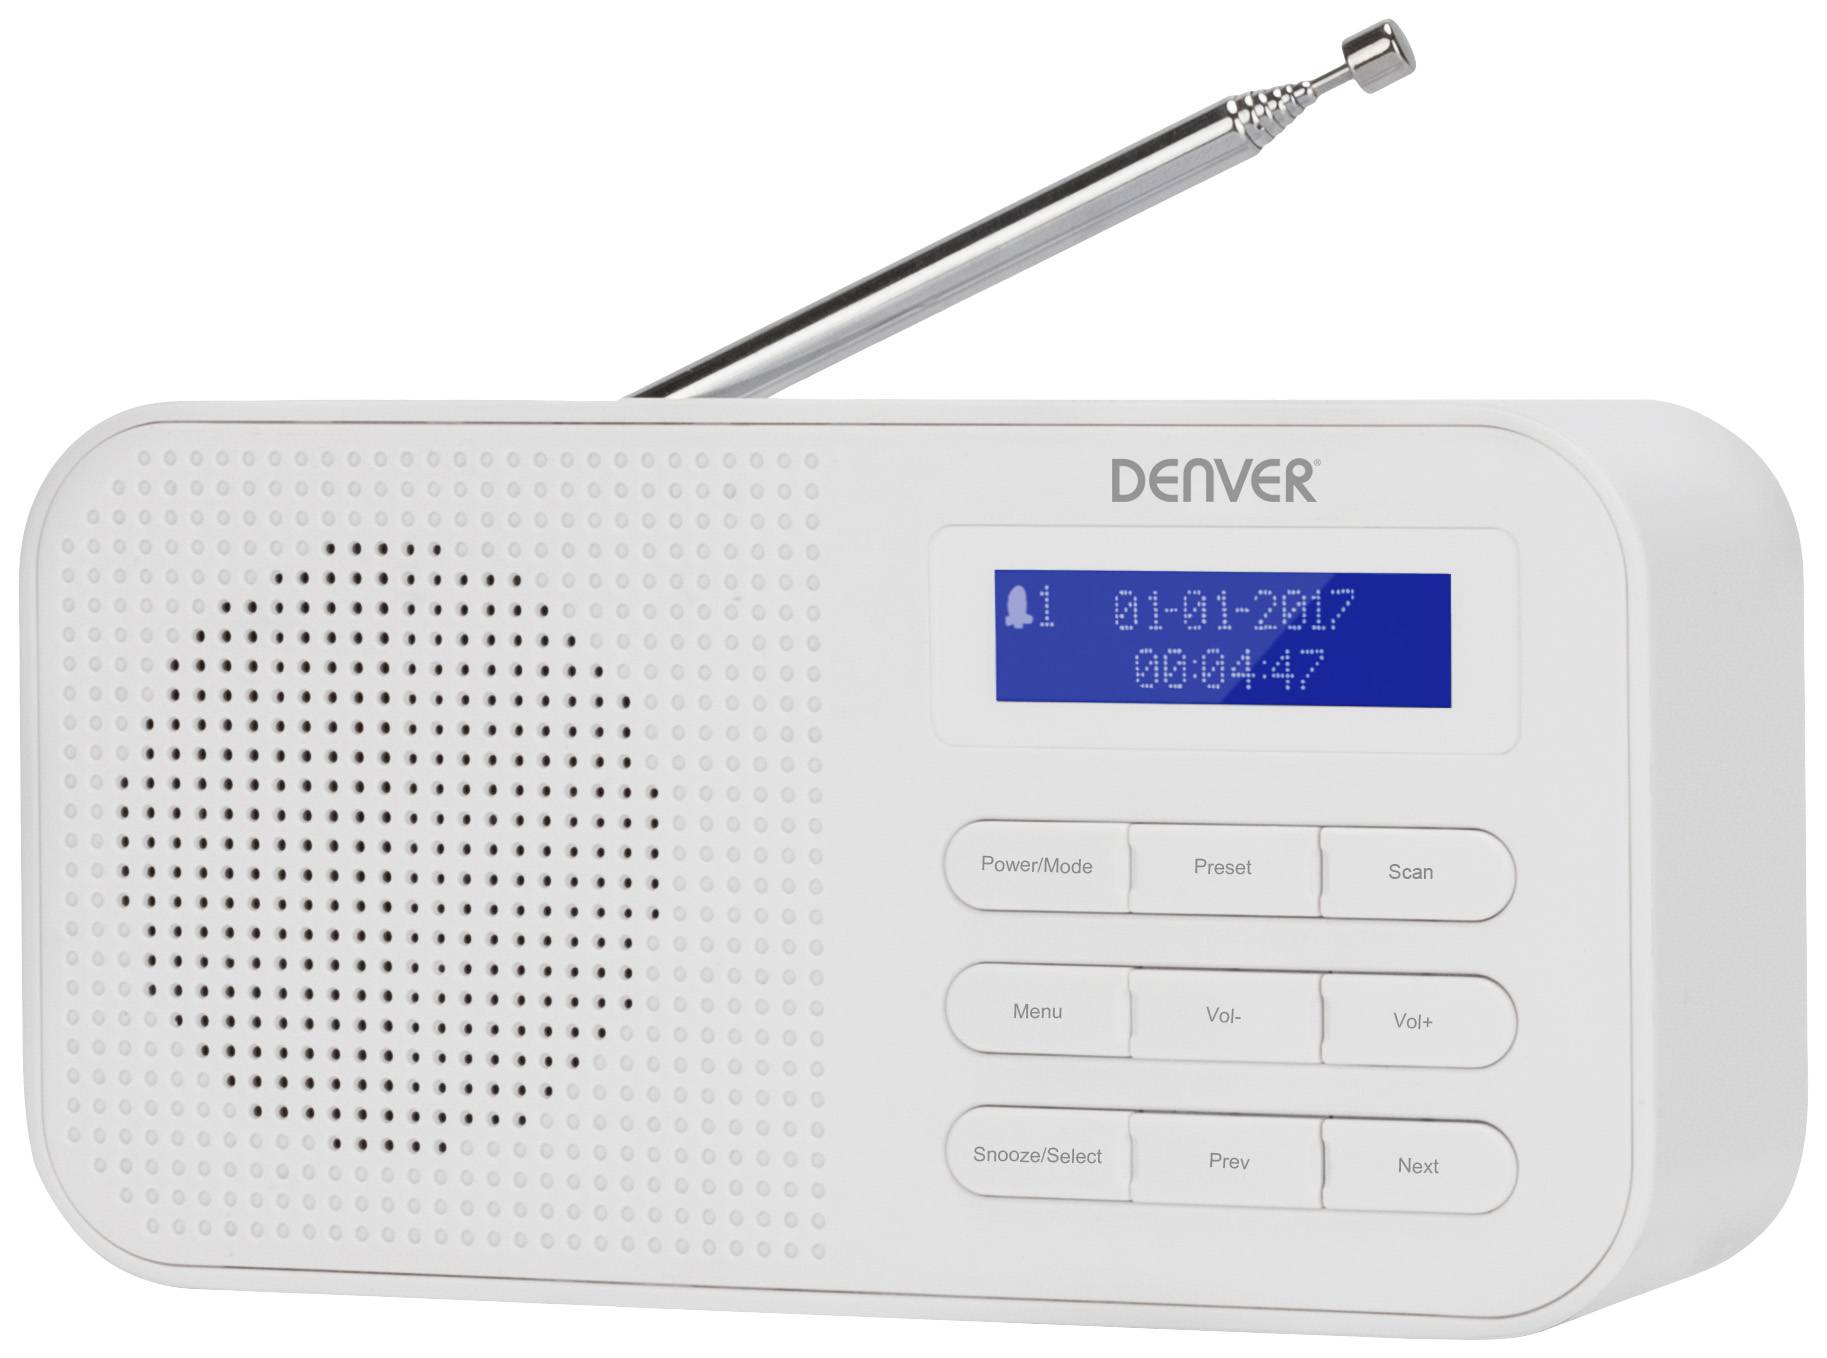 Denver Pocket radio DAB+, Alarm | Conrad.com